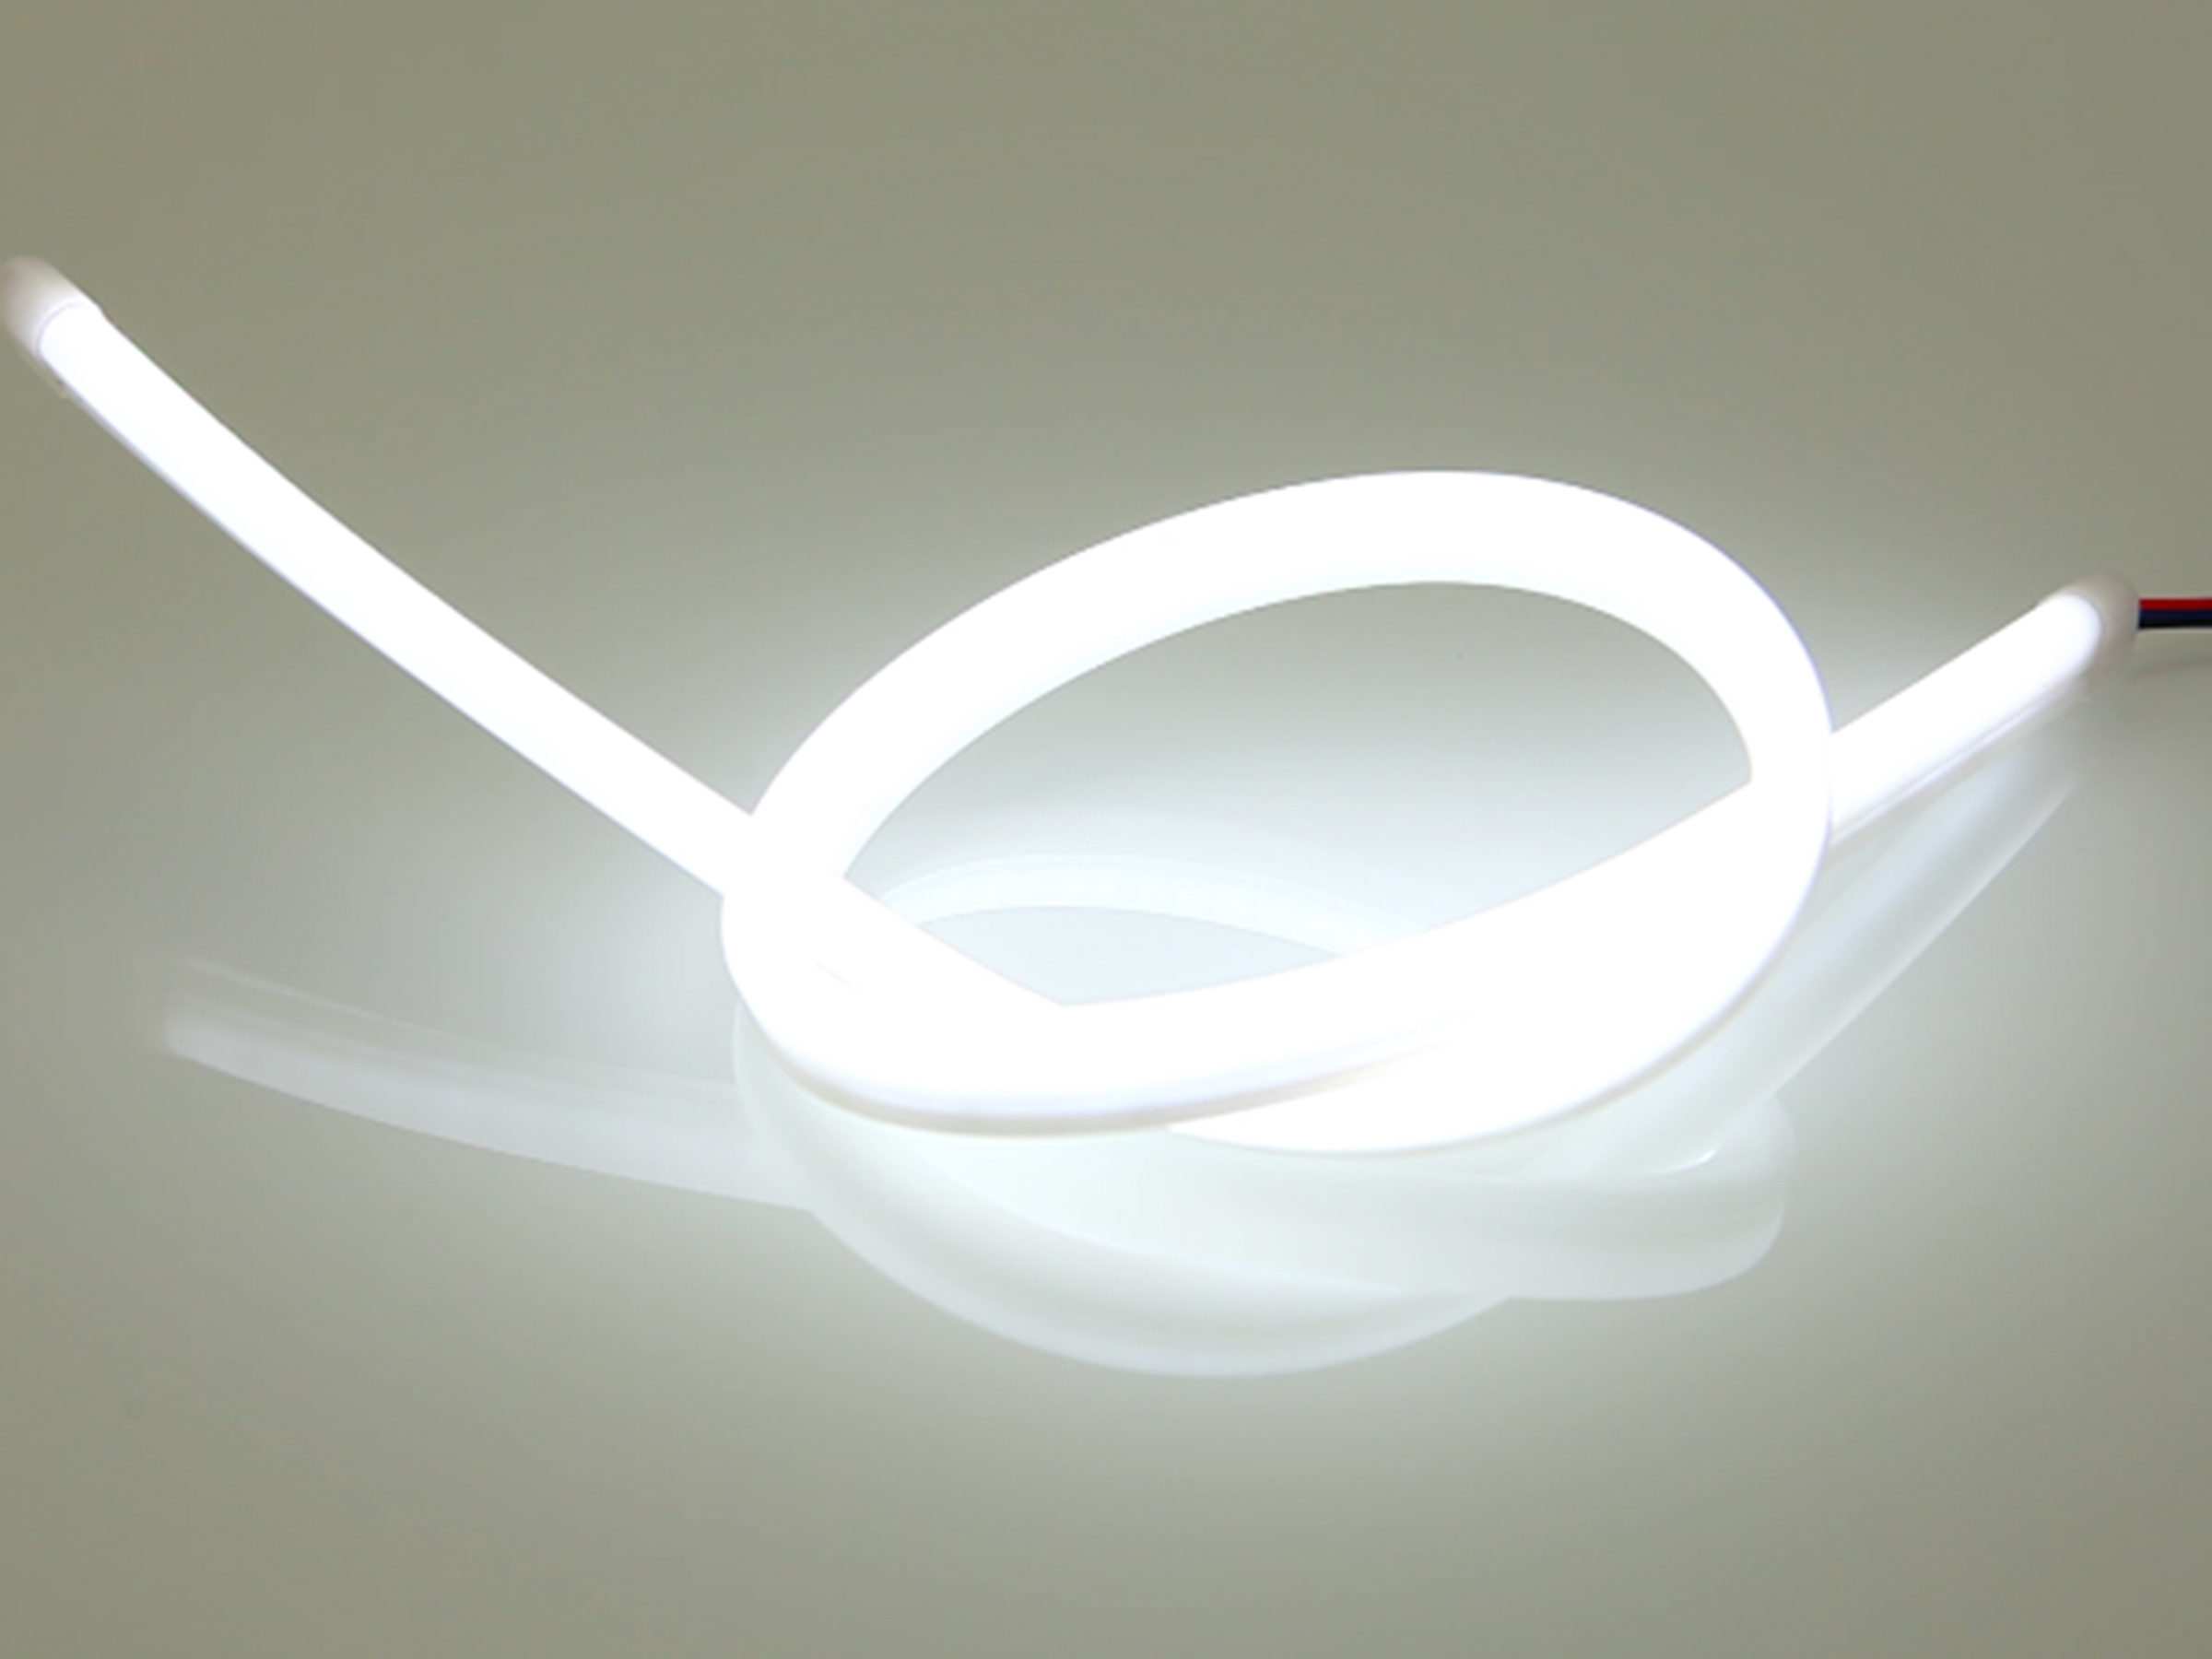 Dynamischer LED Stripe V2.0, 60cm, SMD LEDs, 12V, weiss, orange